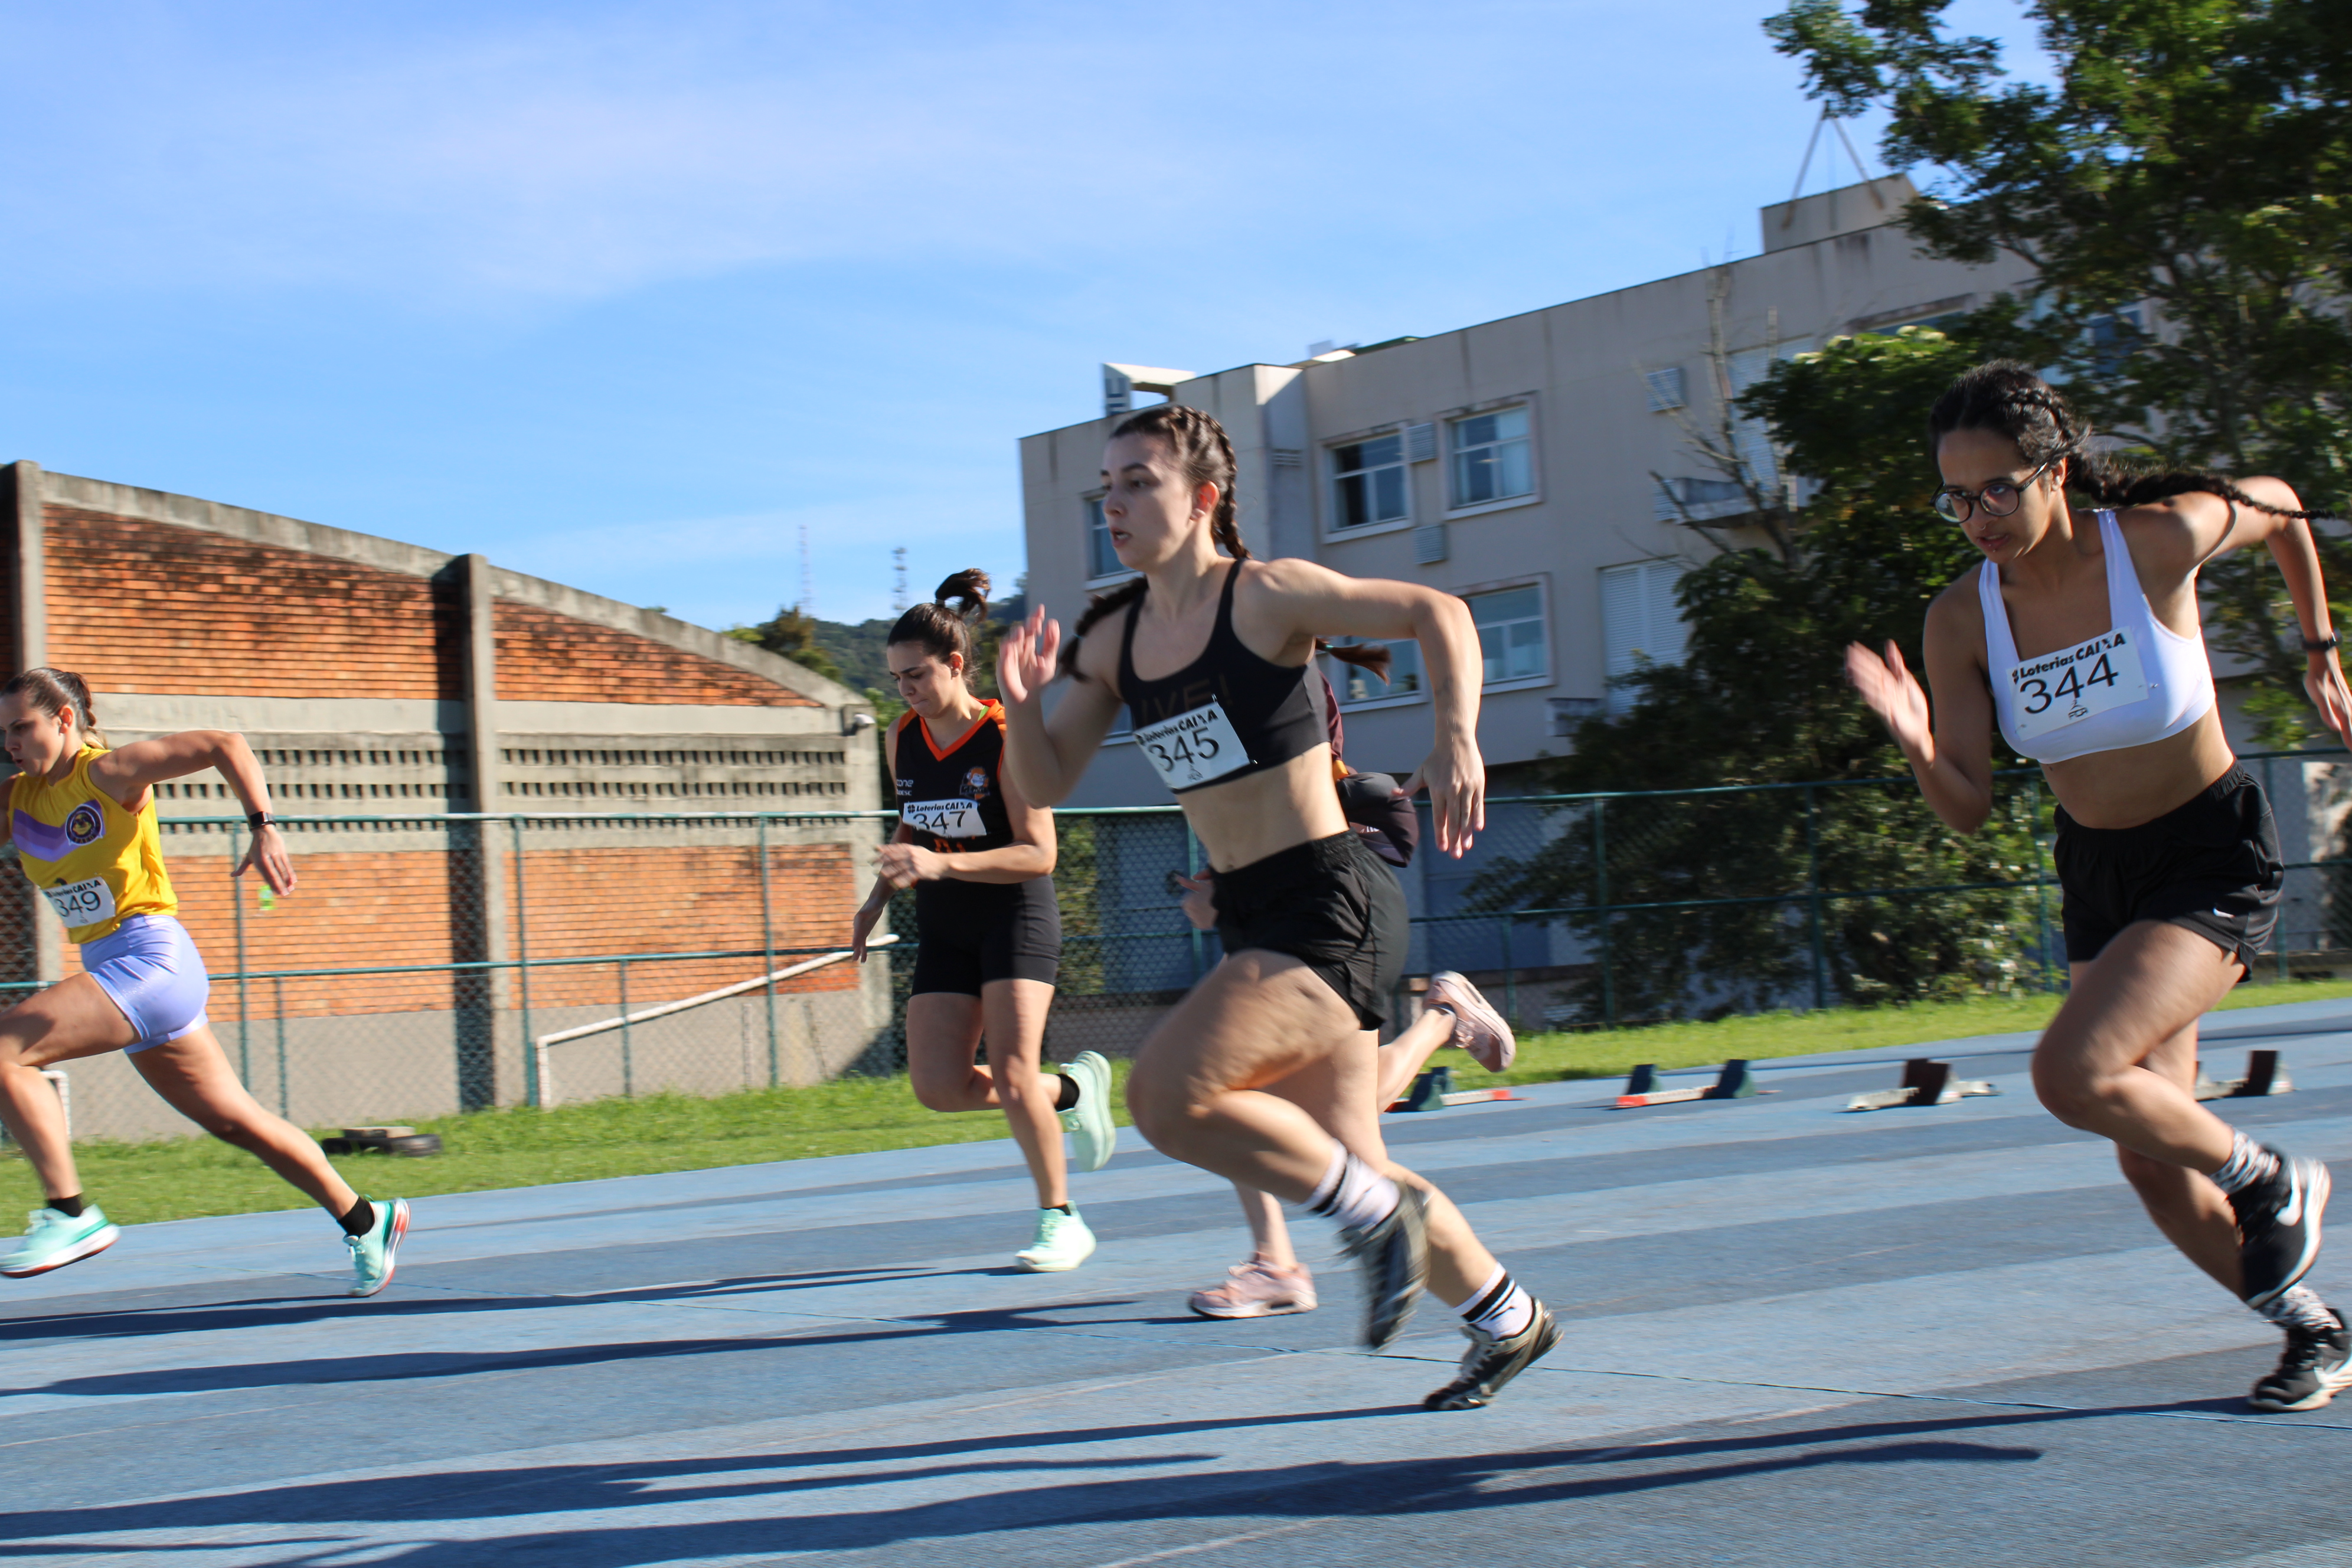 Provas de atletismo e tênis de campo foram realizadas em Florianópolis.Abertura oficial será dia 29, em Blumenau. Foto: Tássia Becker/Udesc